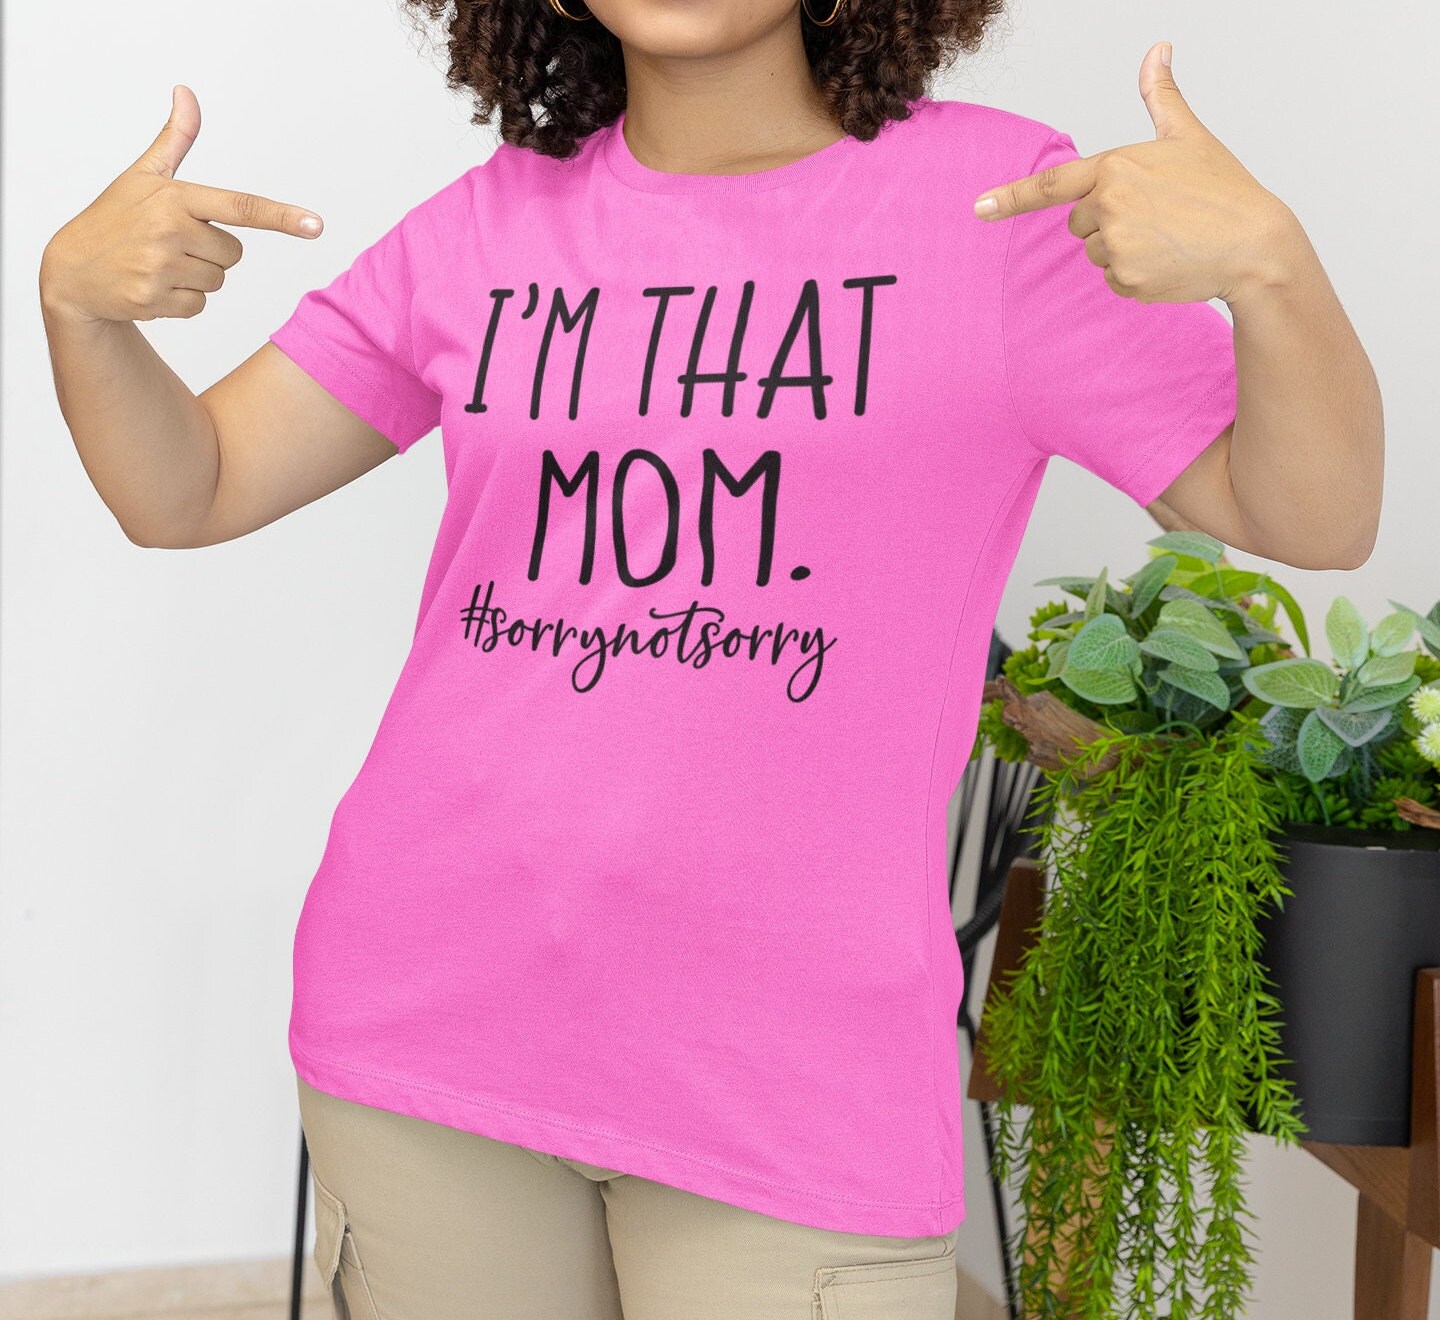 No Nonsense Mom' Women's T-Shirt